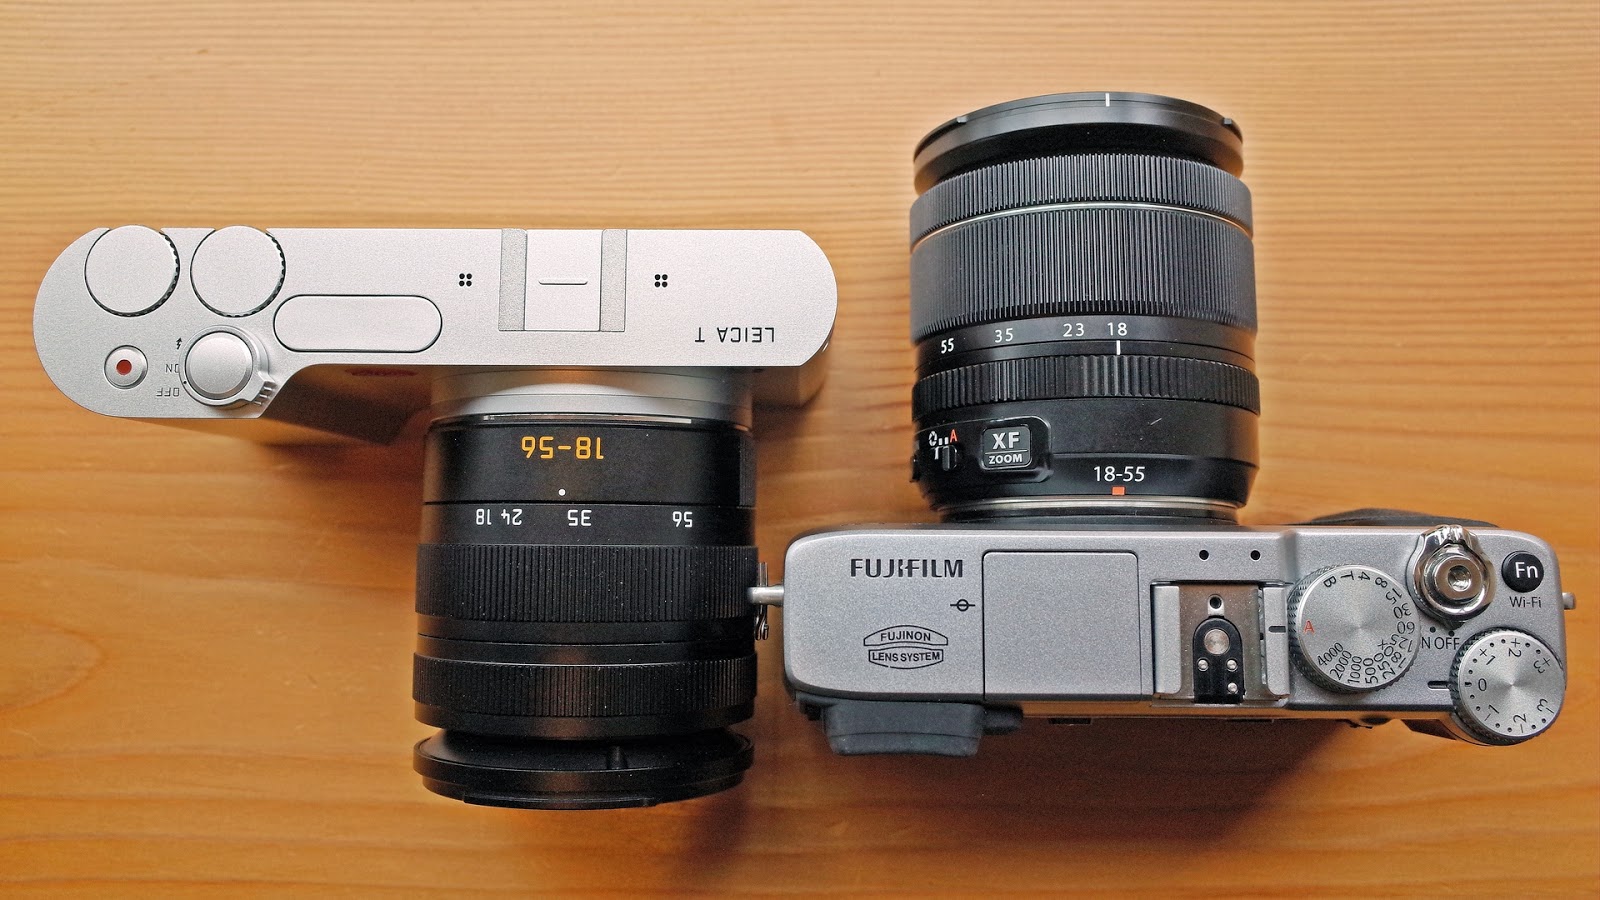 Verminderen vos idee bigheadtaco.com: Leica T versus Fujifilm X-E2: Modern Art vs Retro Cool